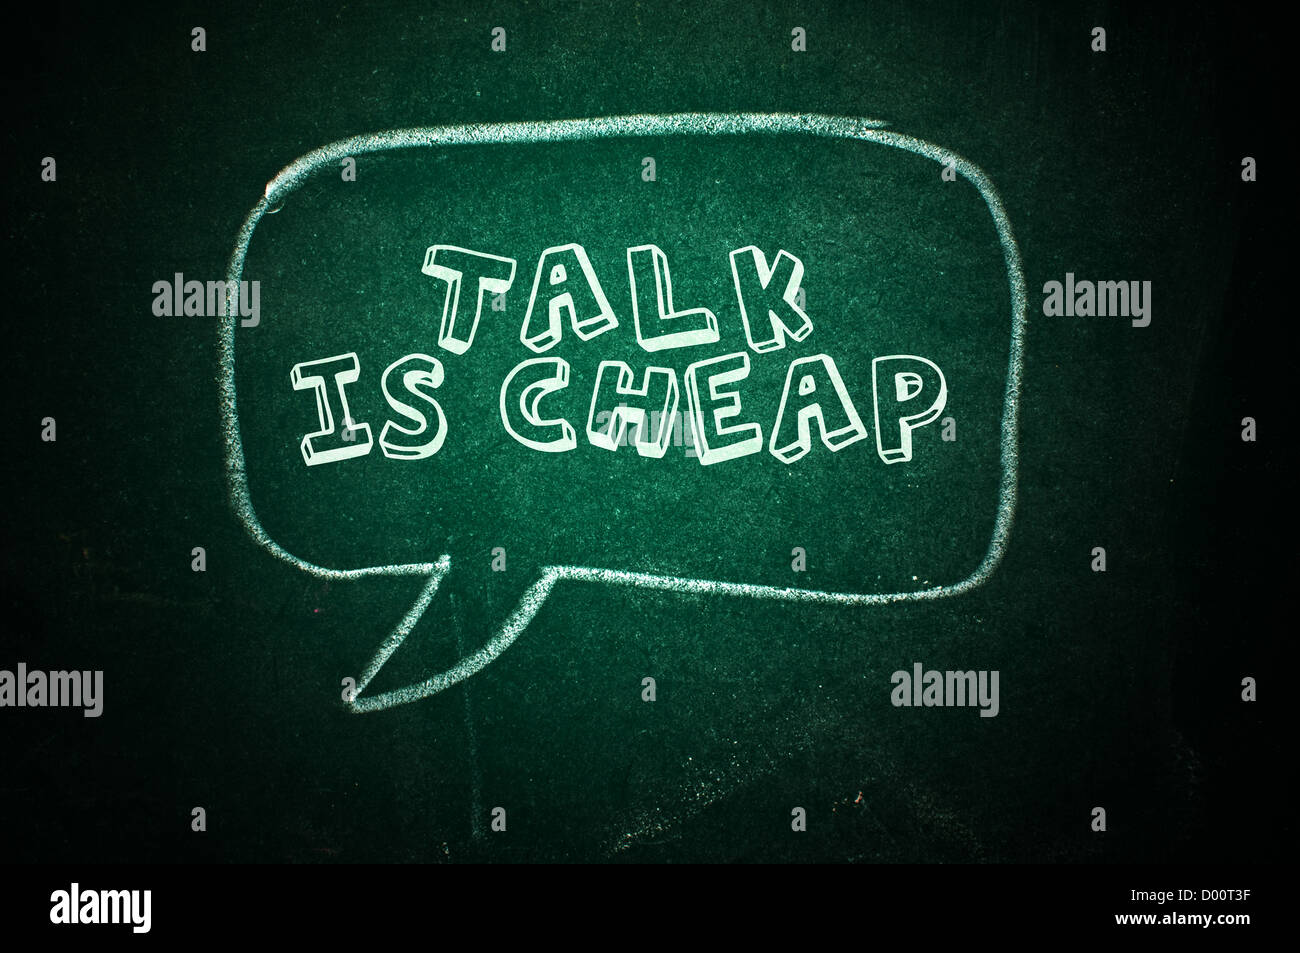 Talk Talk es barato - globo en una pizarra verde Foto de stock